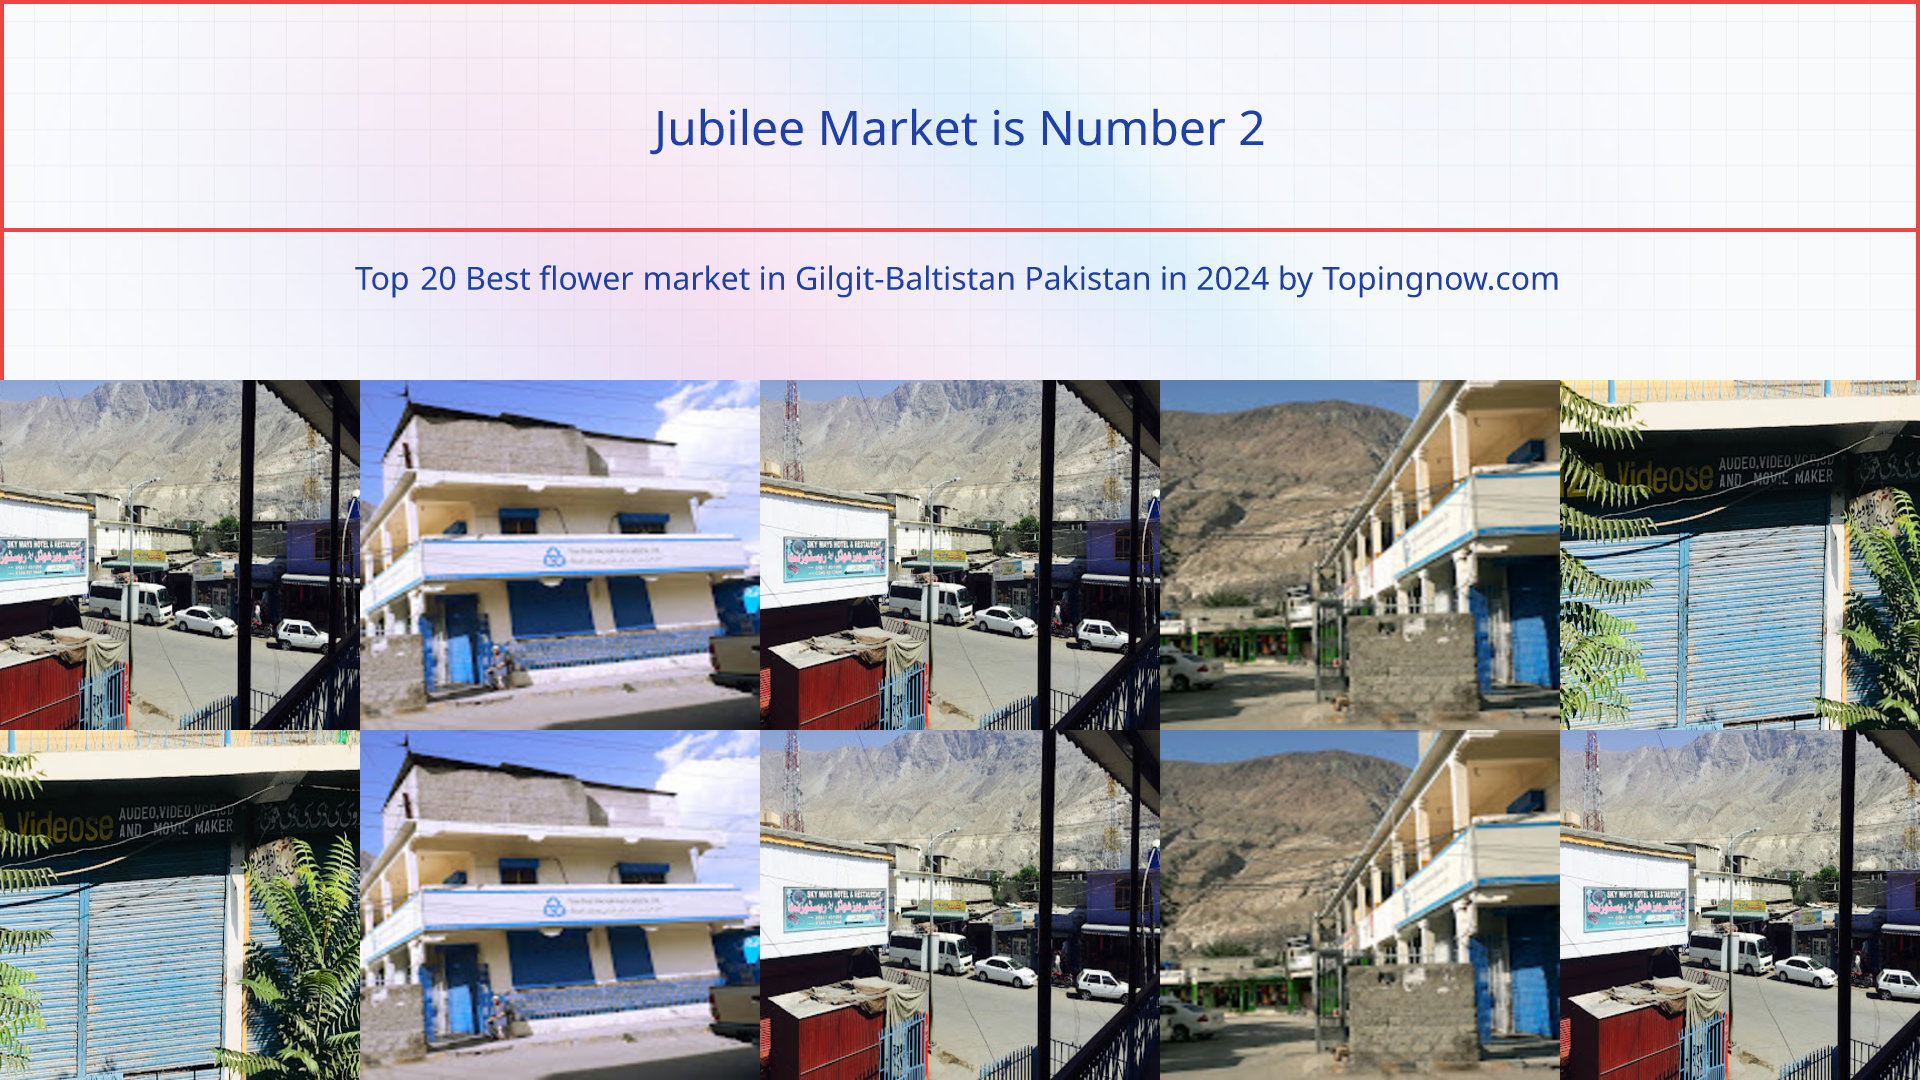 Jubilee Market: Top 20 Best flower market in Gilgit-Baltistan Pakistan in 2024